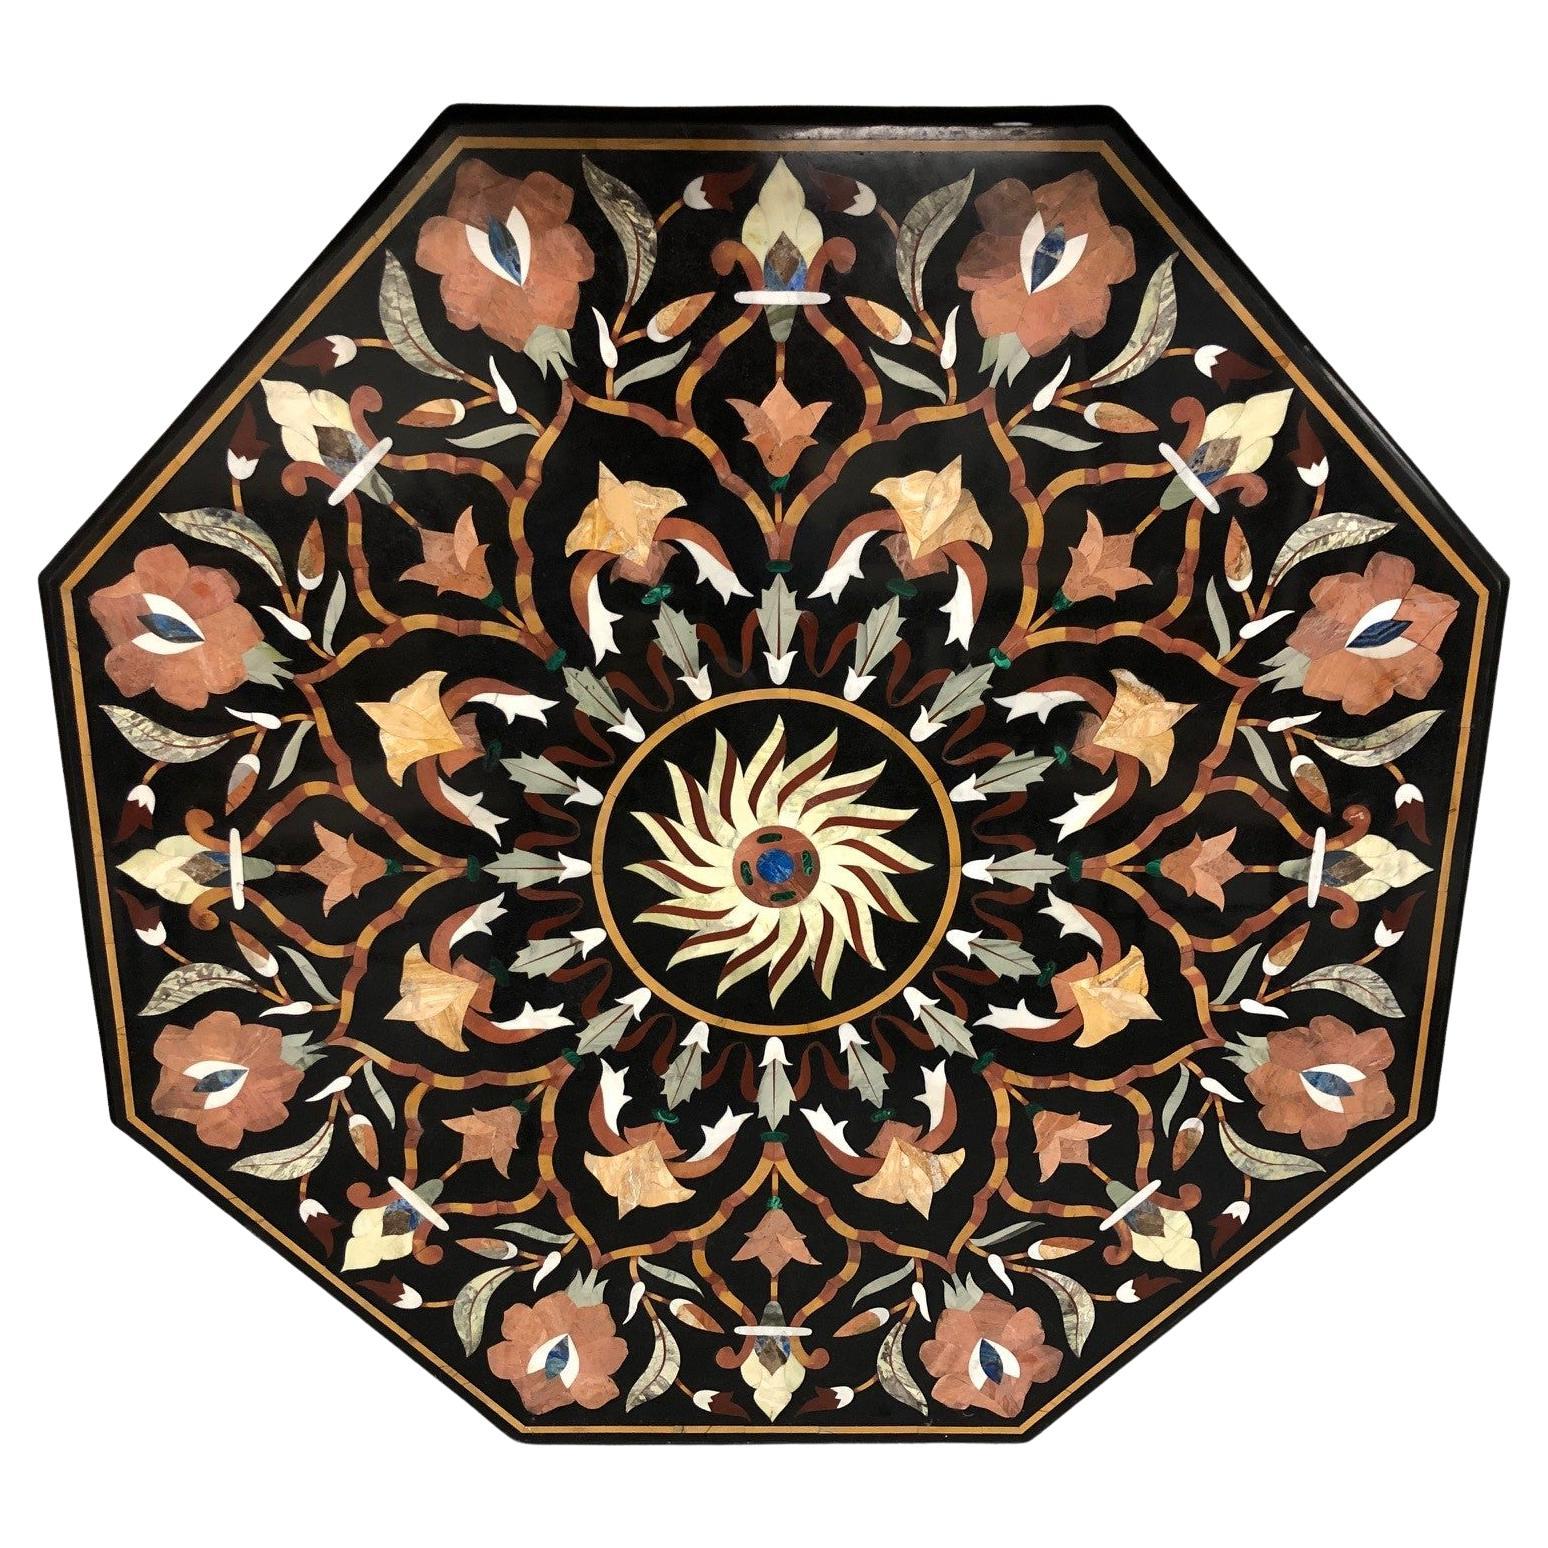 Pietra Dura Mosaik Achteck Esstischplatte Marmor mit Halbedelsteinen